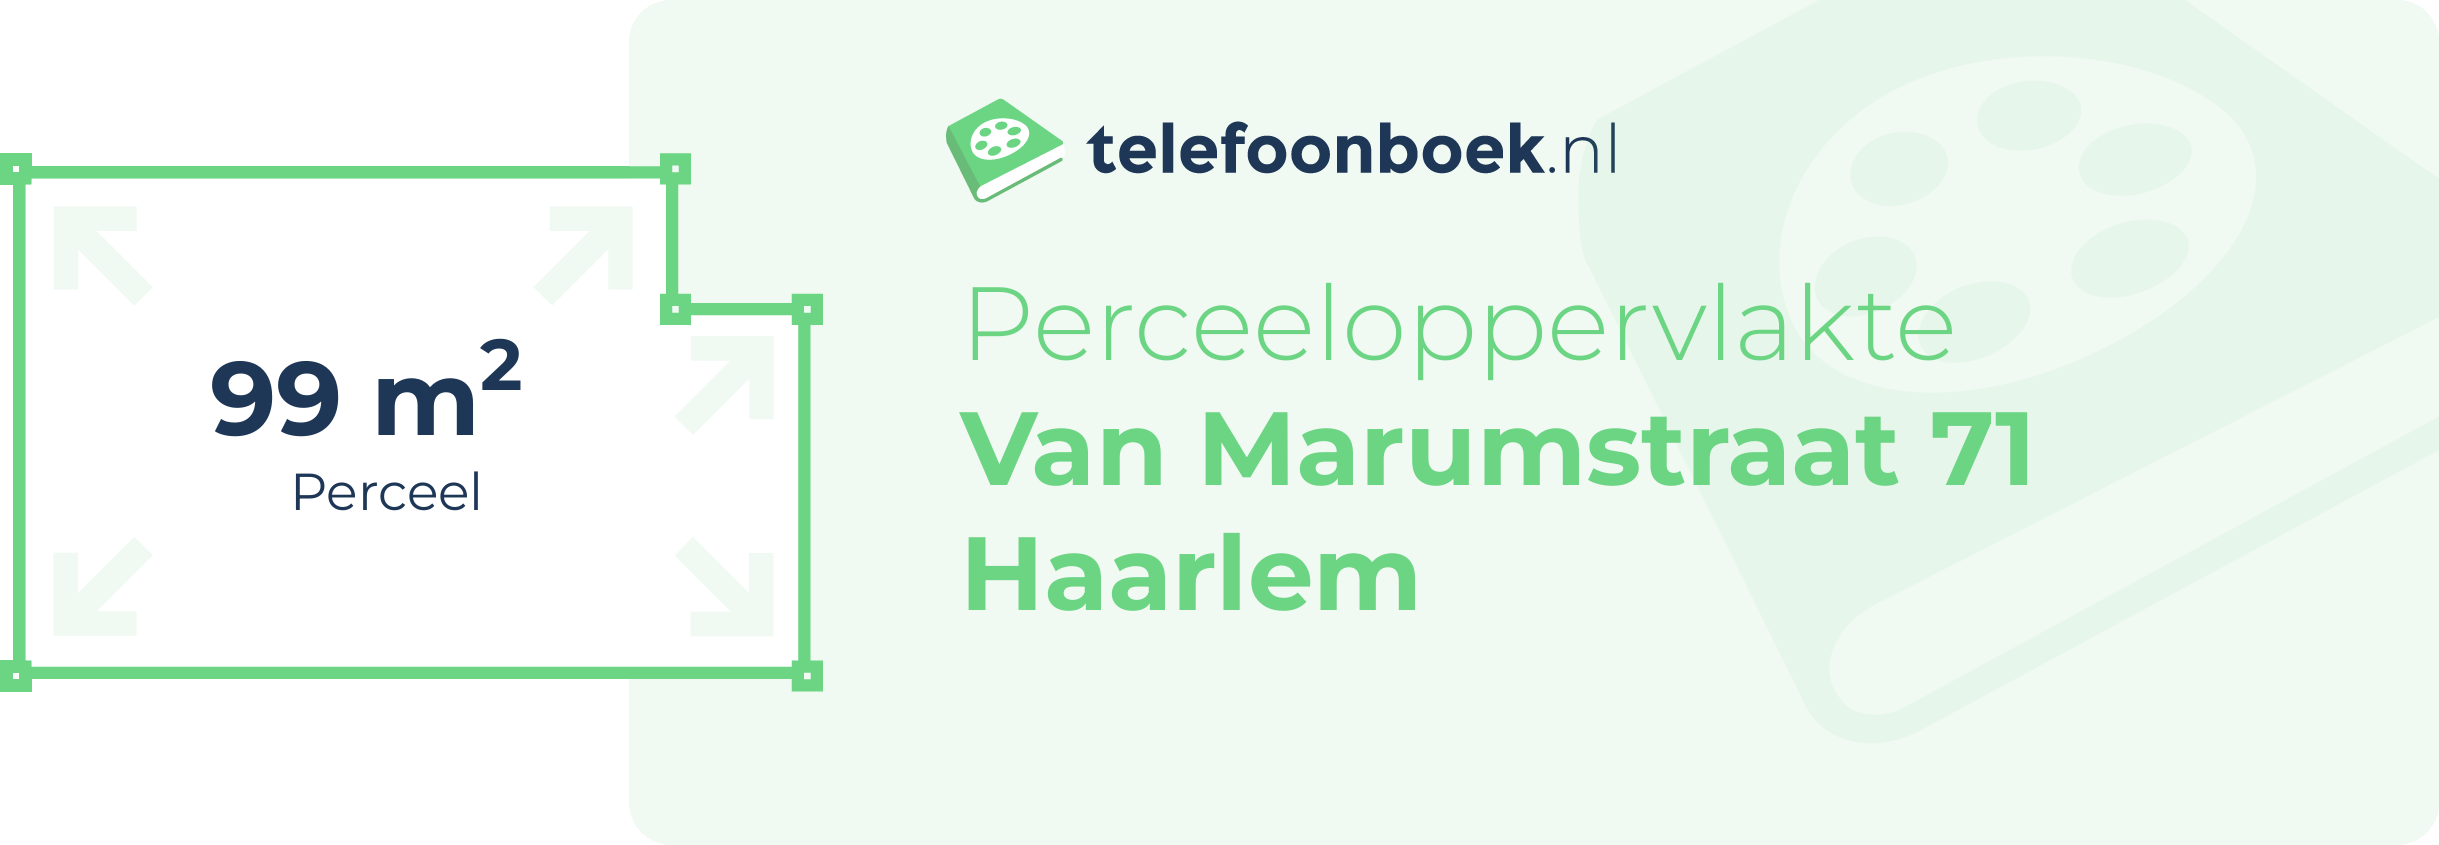 Perceeloppervlakte Van Marumstraat 71 Haarlem